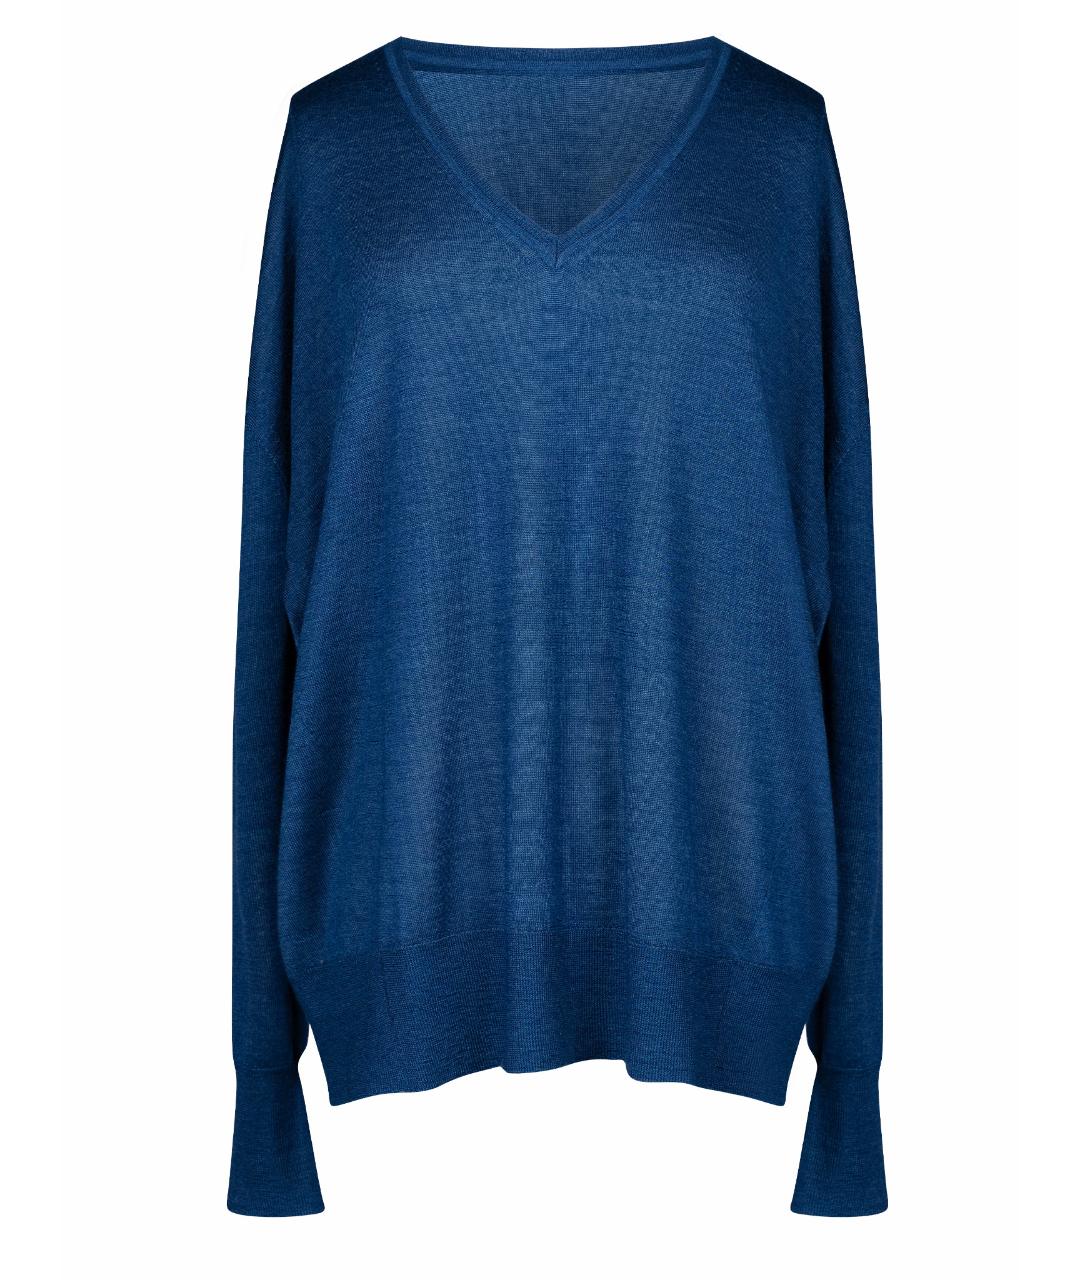 ISABEL MARANT Синий кашемировый джемпер / свитер, фото 1